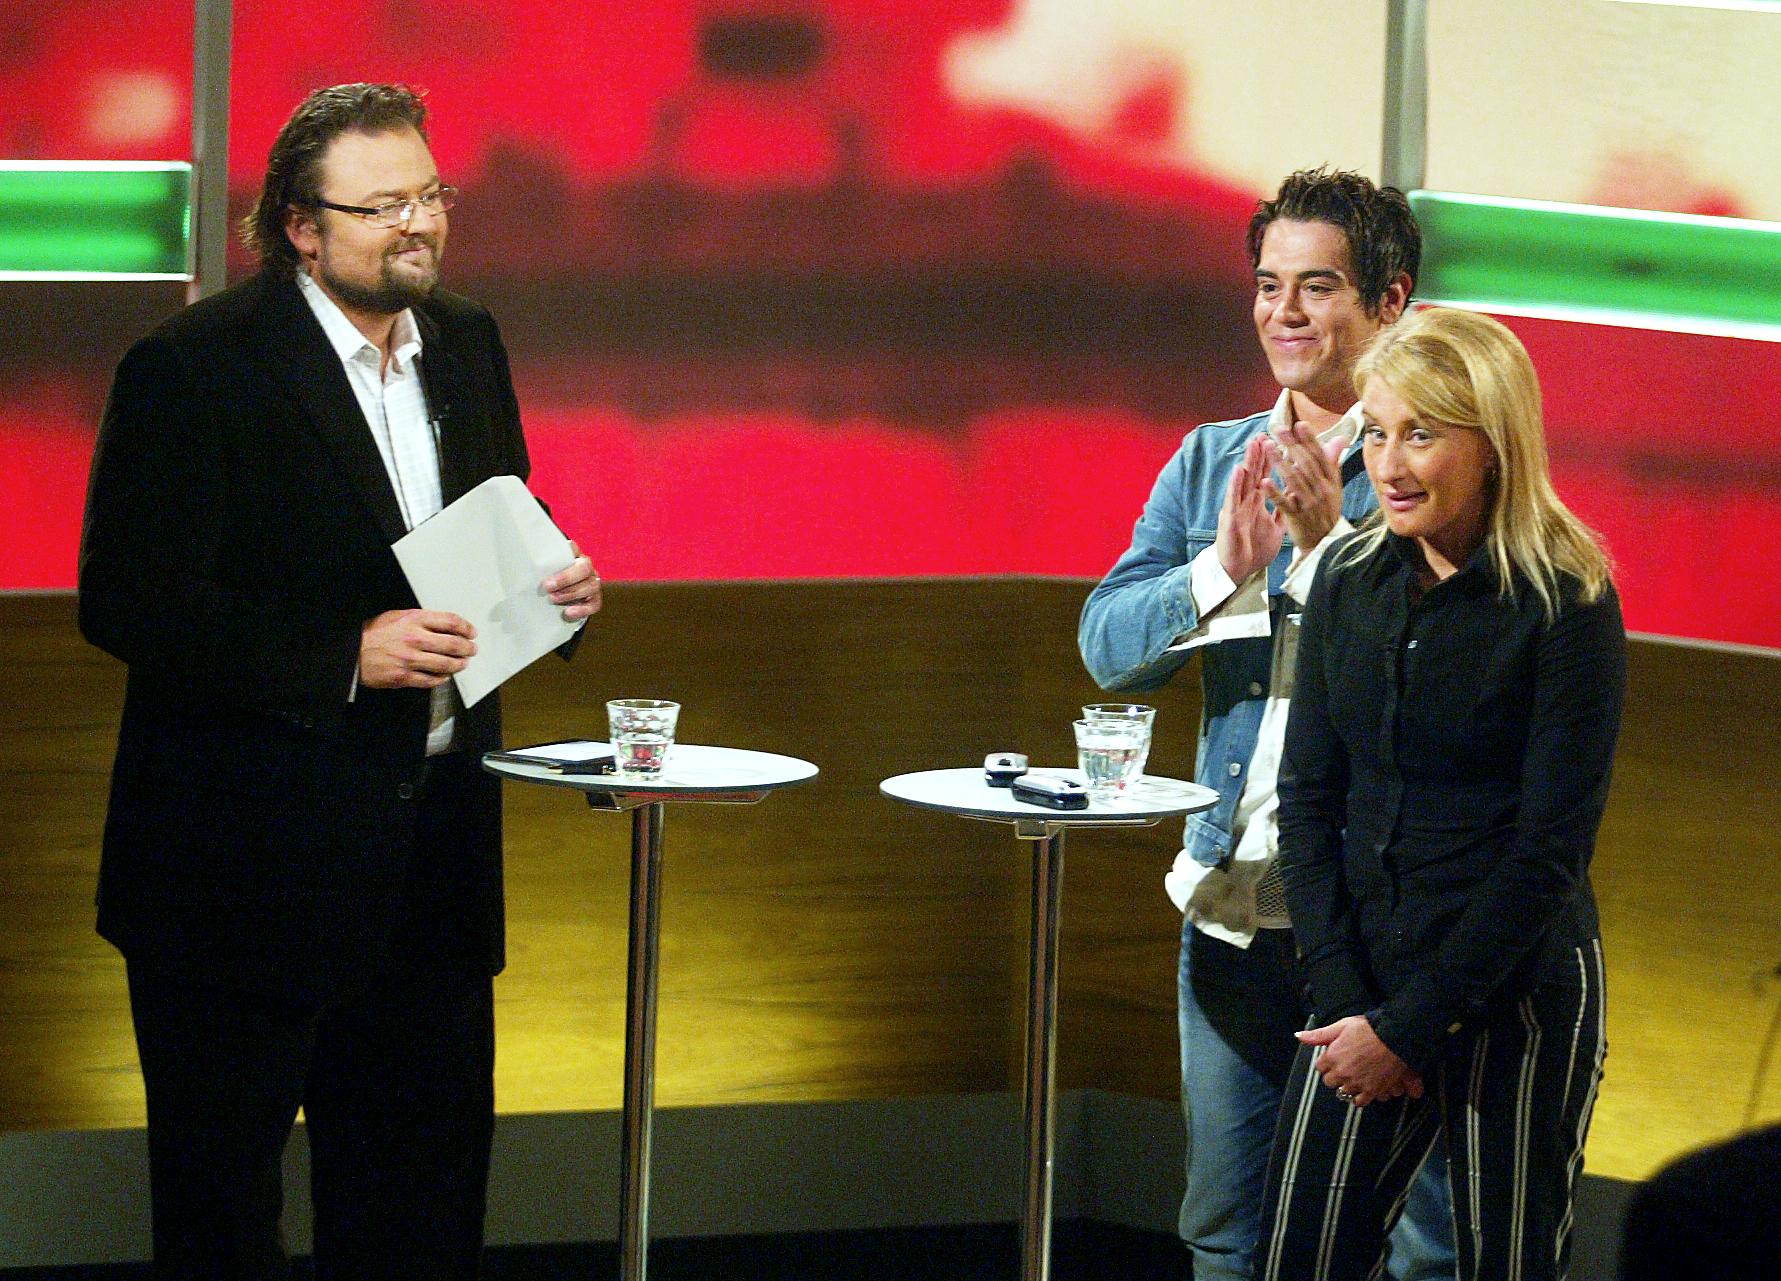 Tillsammans med tävlingsdeltagarna René Valdes och Caroline Hannah under inspelningen av dokusåpan ”Masterplan” i augusti 2003.